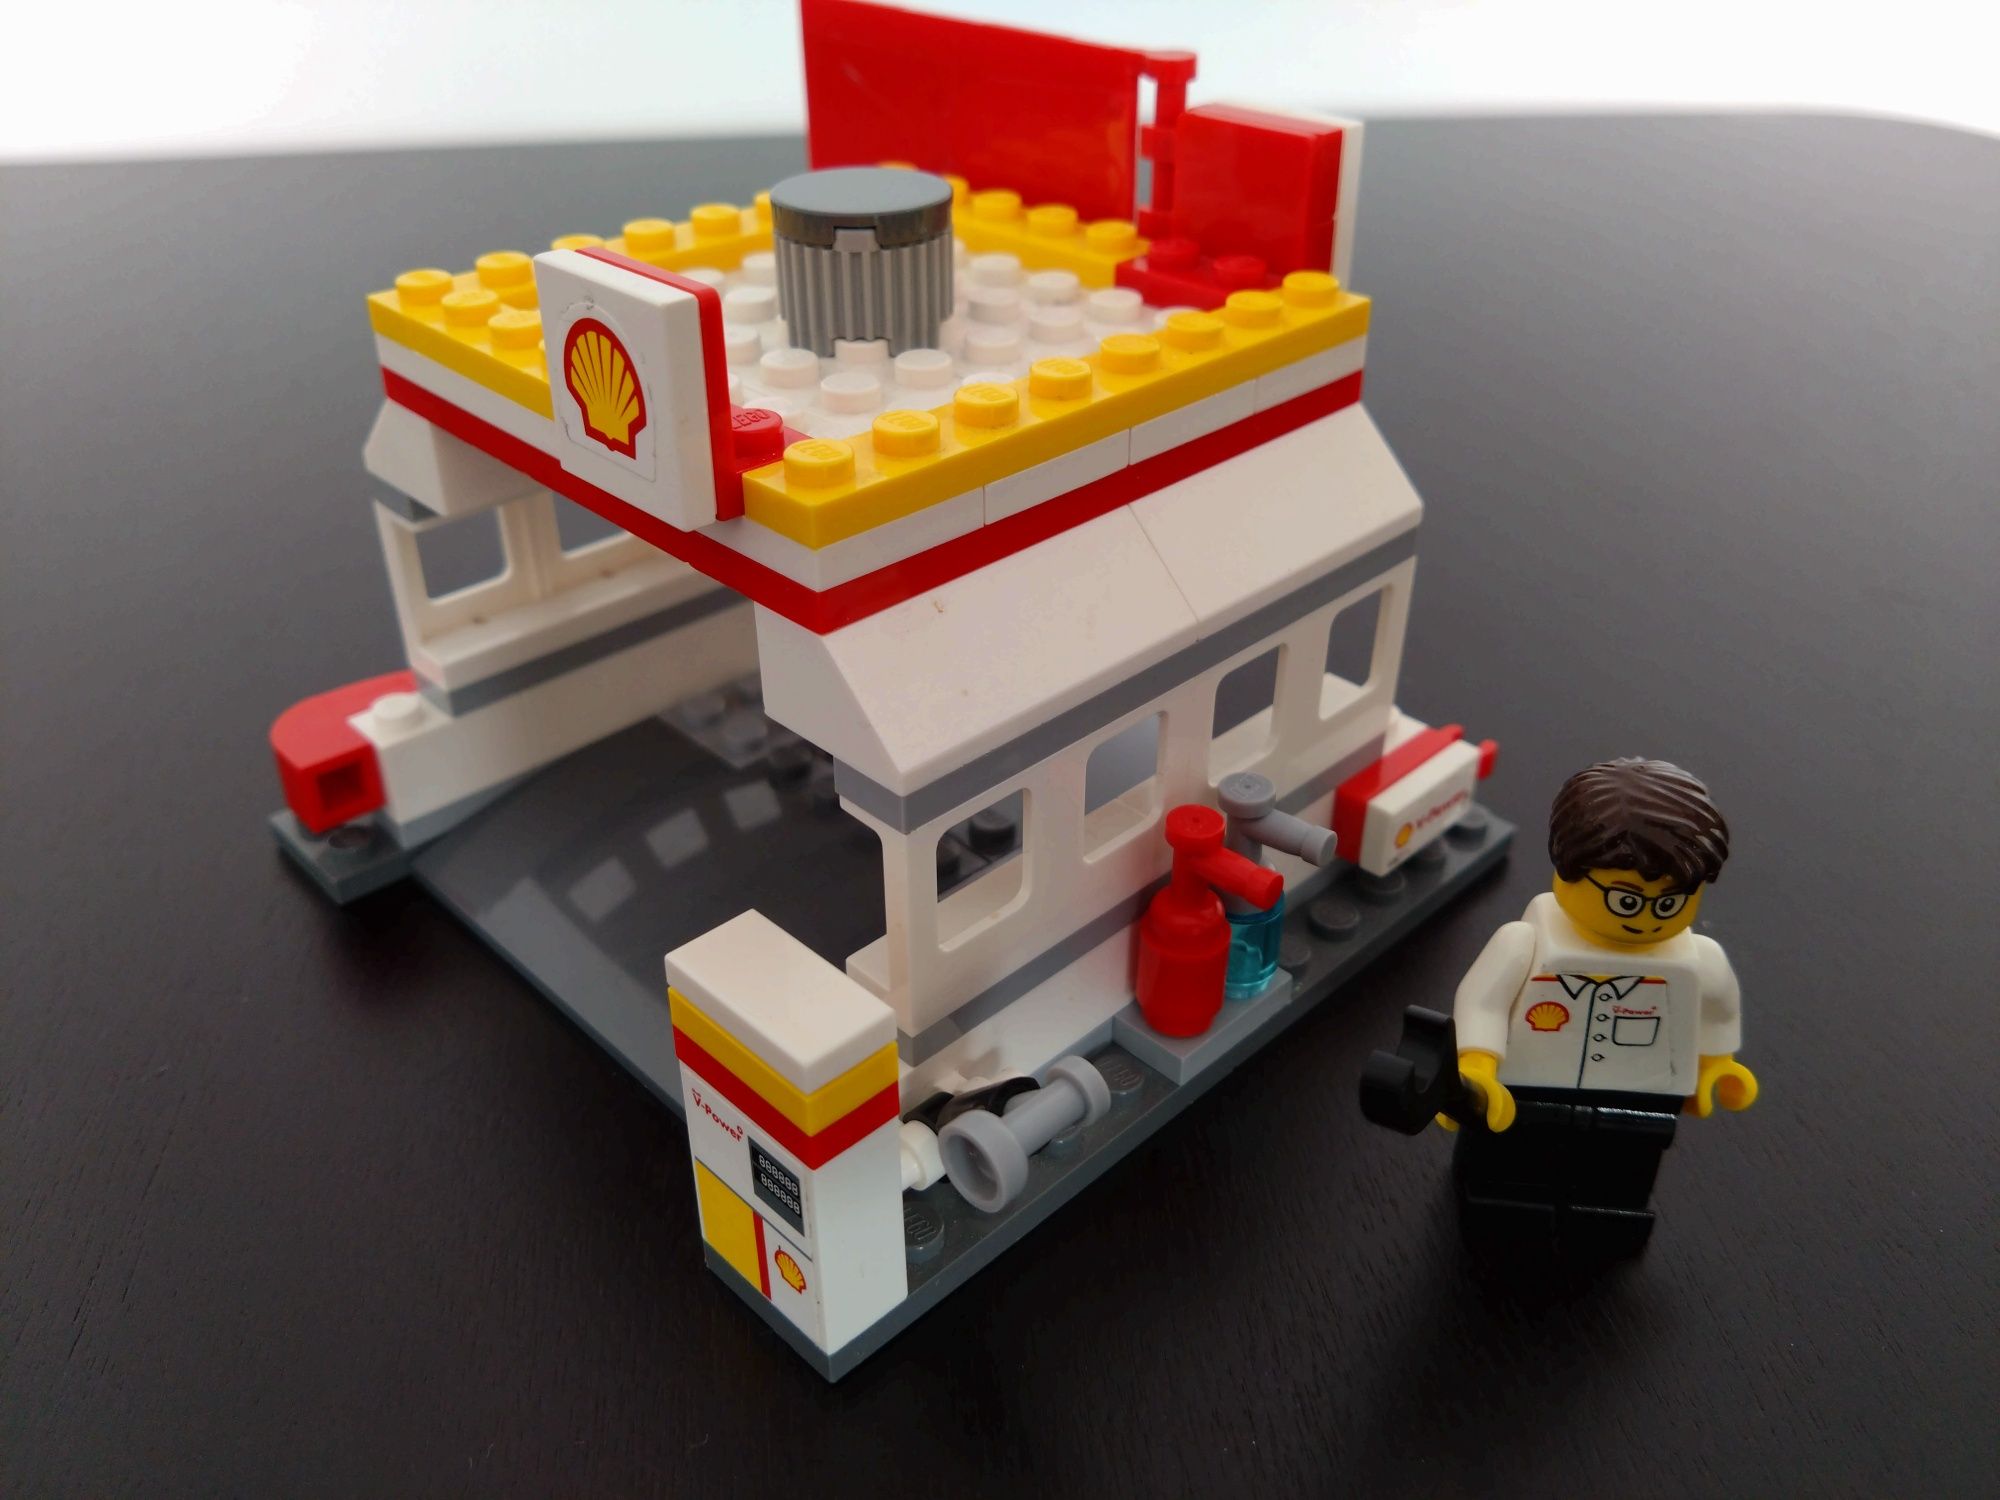 LEGO Shell kultowa kolekcja z 2015 roku z instrukcjami. Polecam!